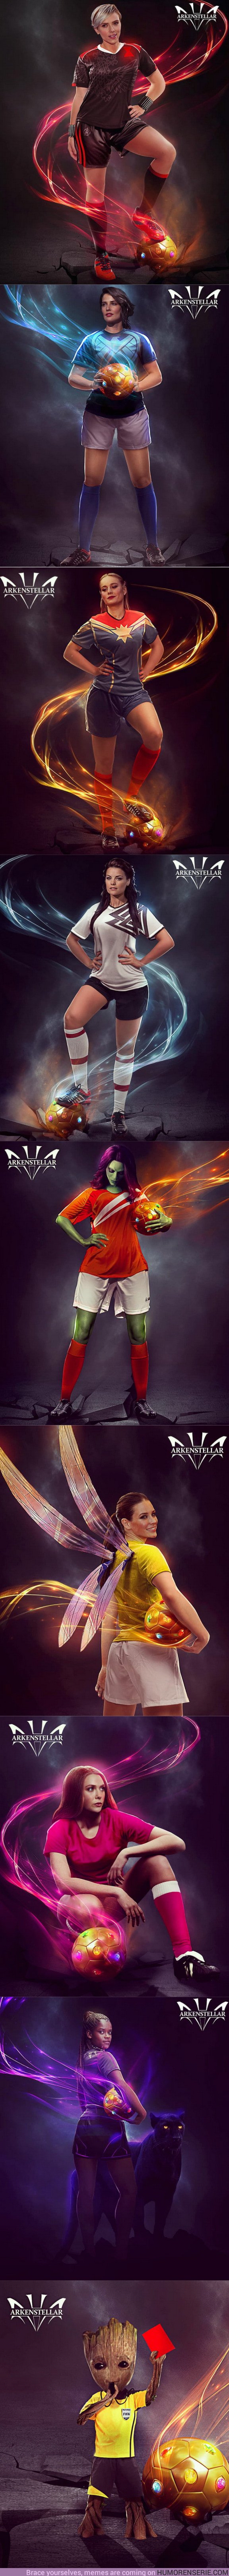 26736 - GALERÍA: Así son las heroínas de Marvel caracterizadas como futbolistas del Mundial de Rusia